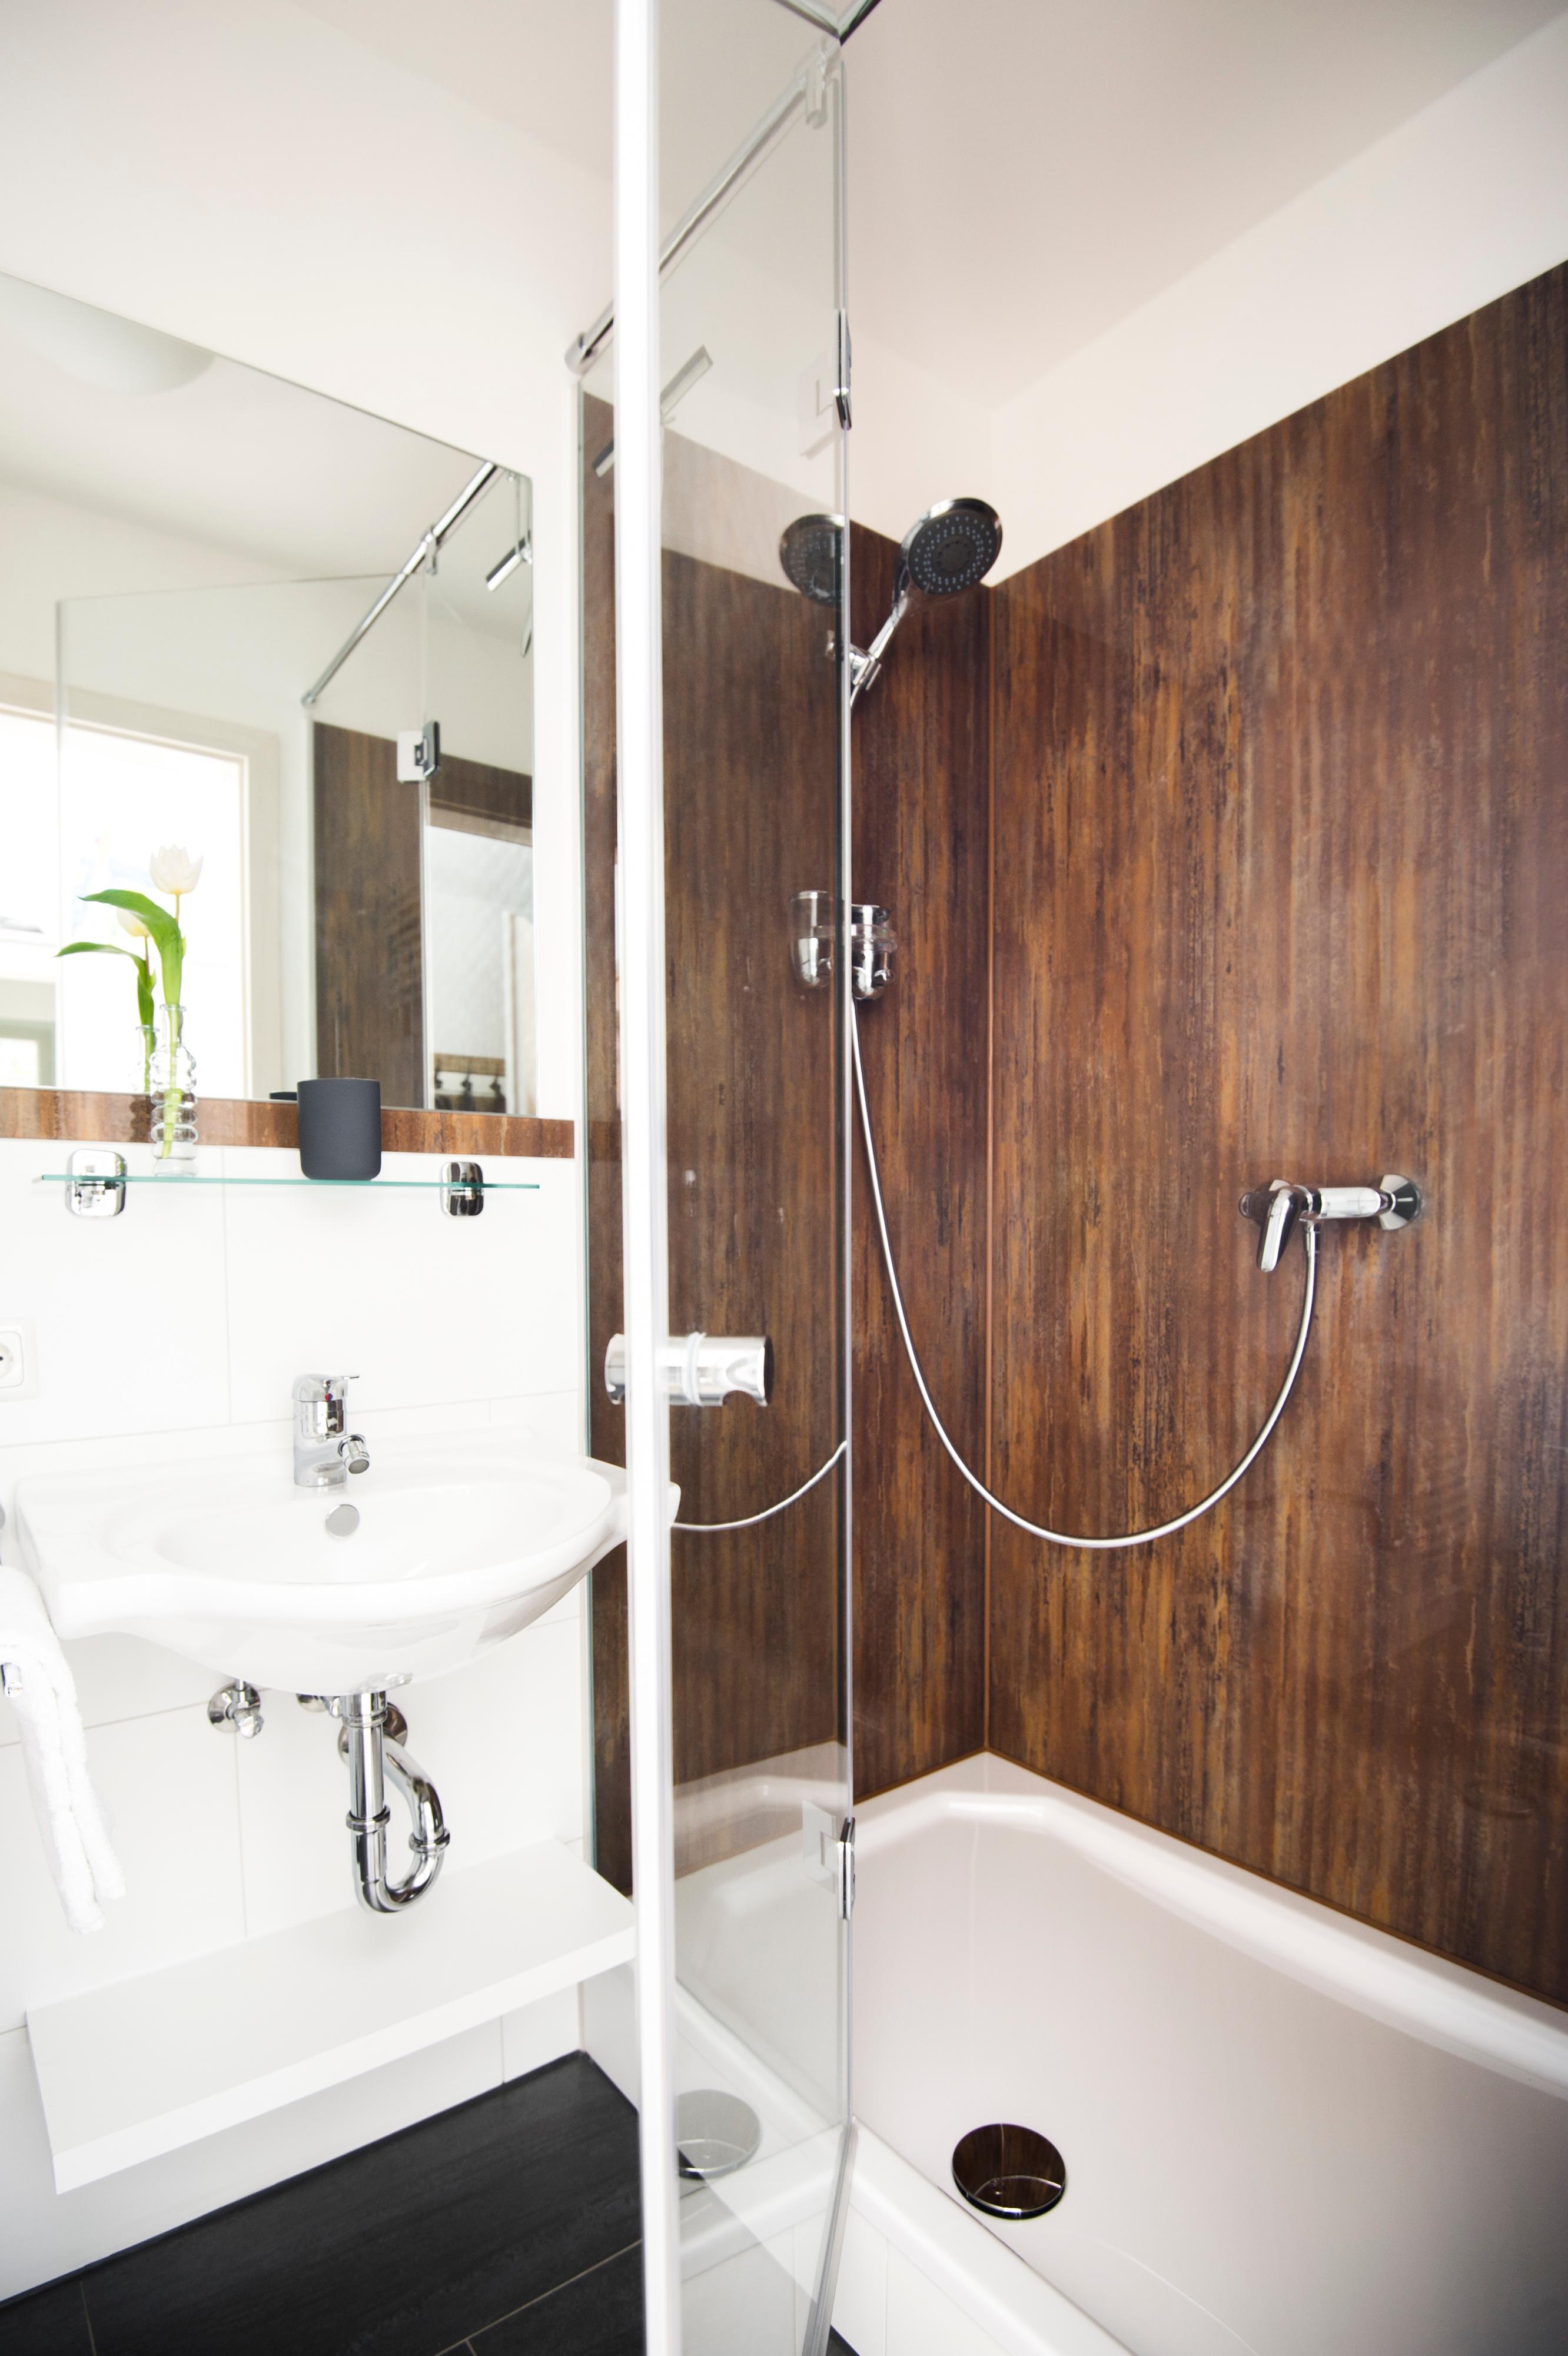 Glas Laminat Dusche mit Rostoptik als Duschrückwand #badezimmer #laminat #schiefer #duschrückwand ©Layerprint.de